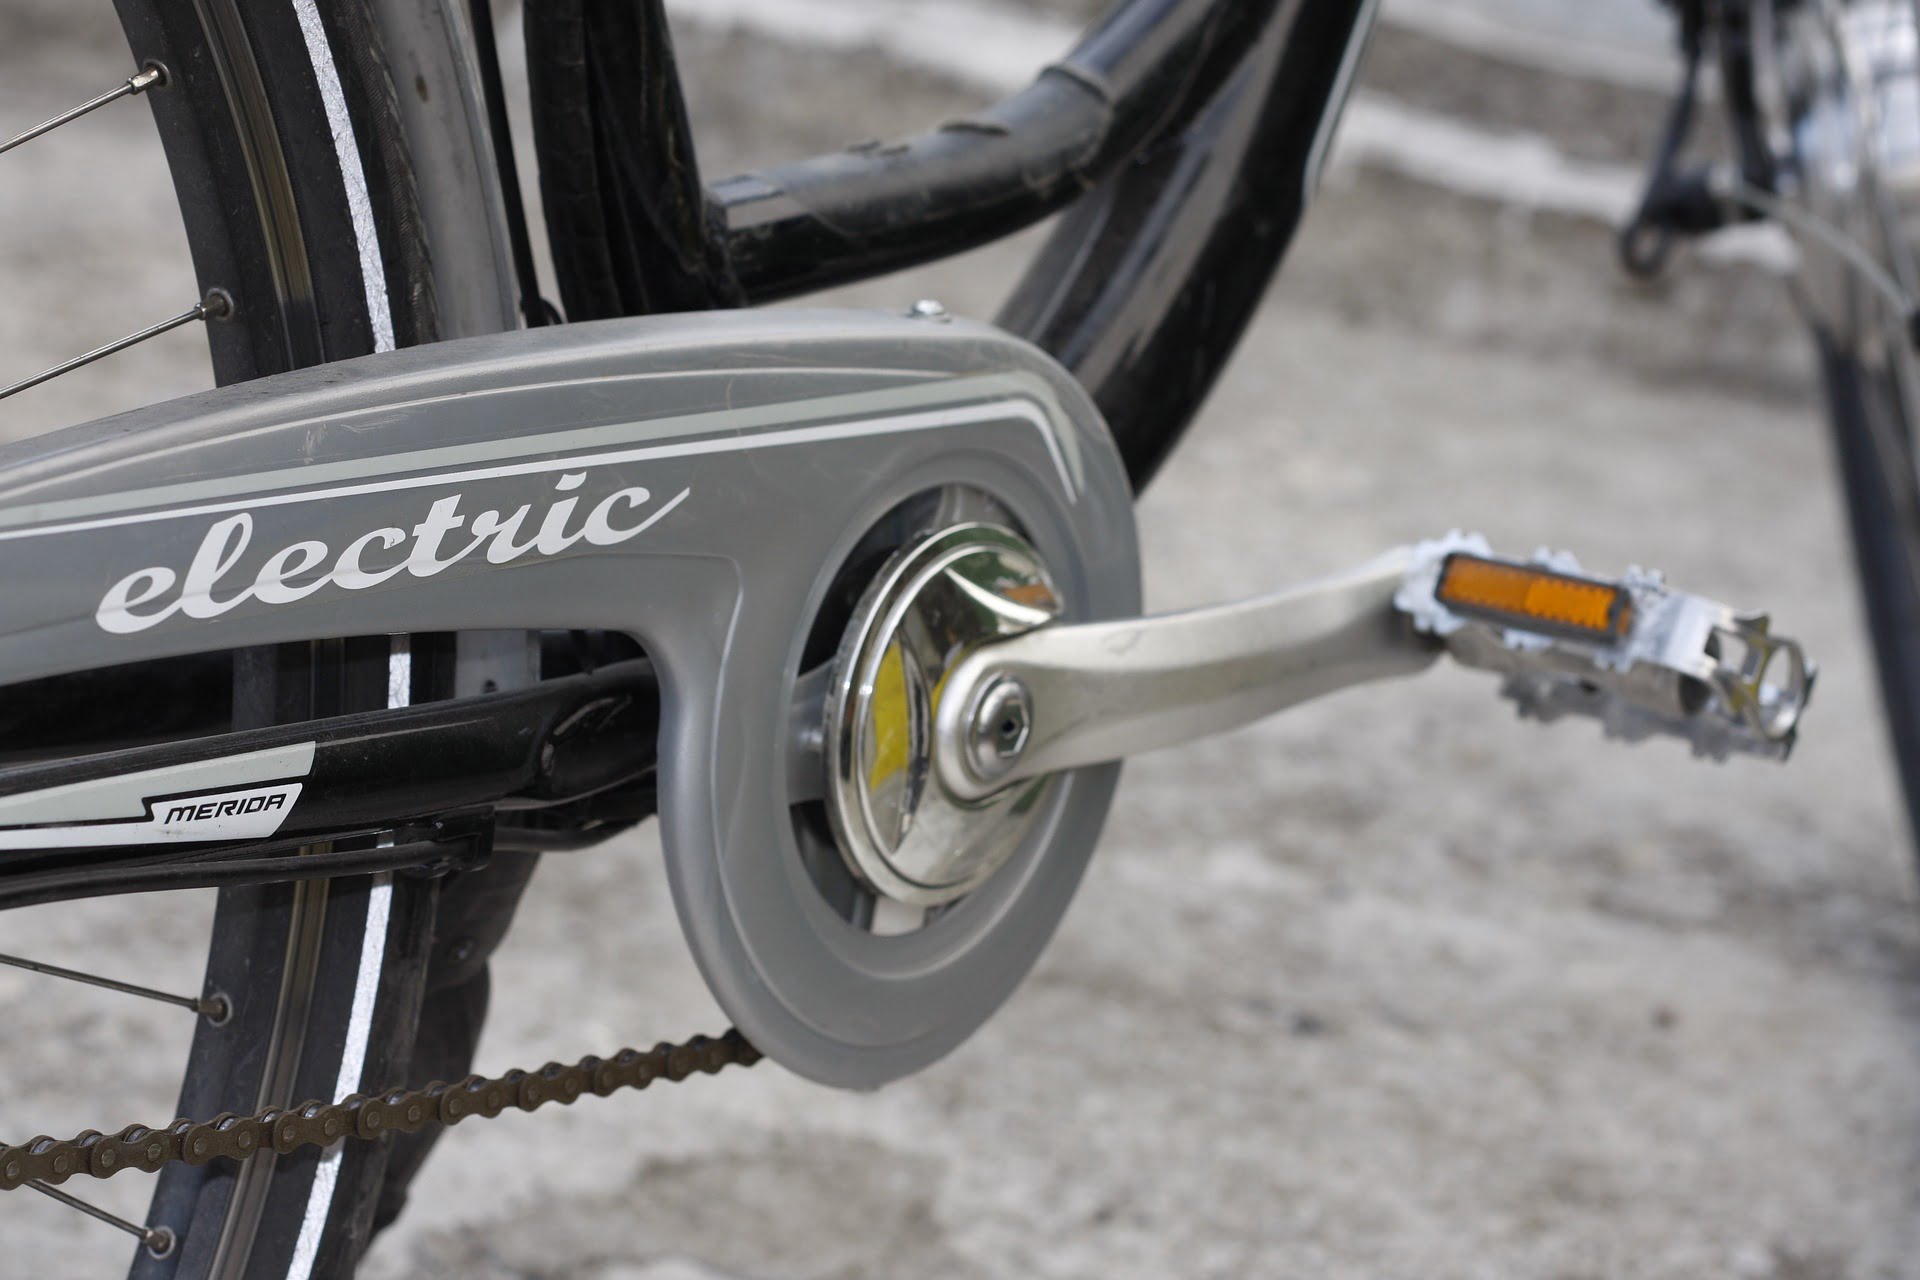 Bicicleta elétrica x bicicleta comum: qual a diferença?